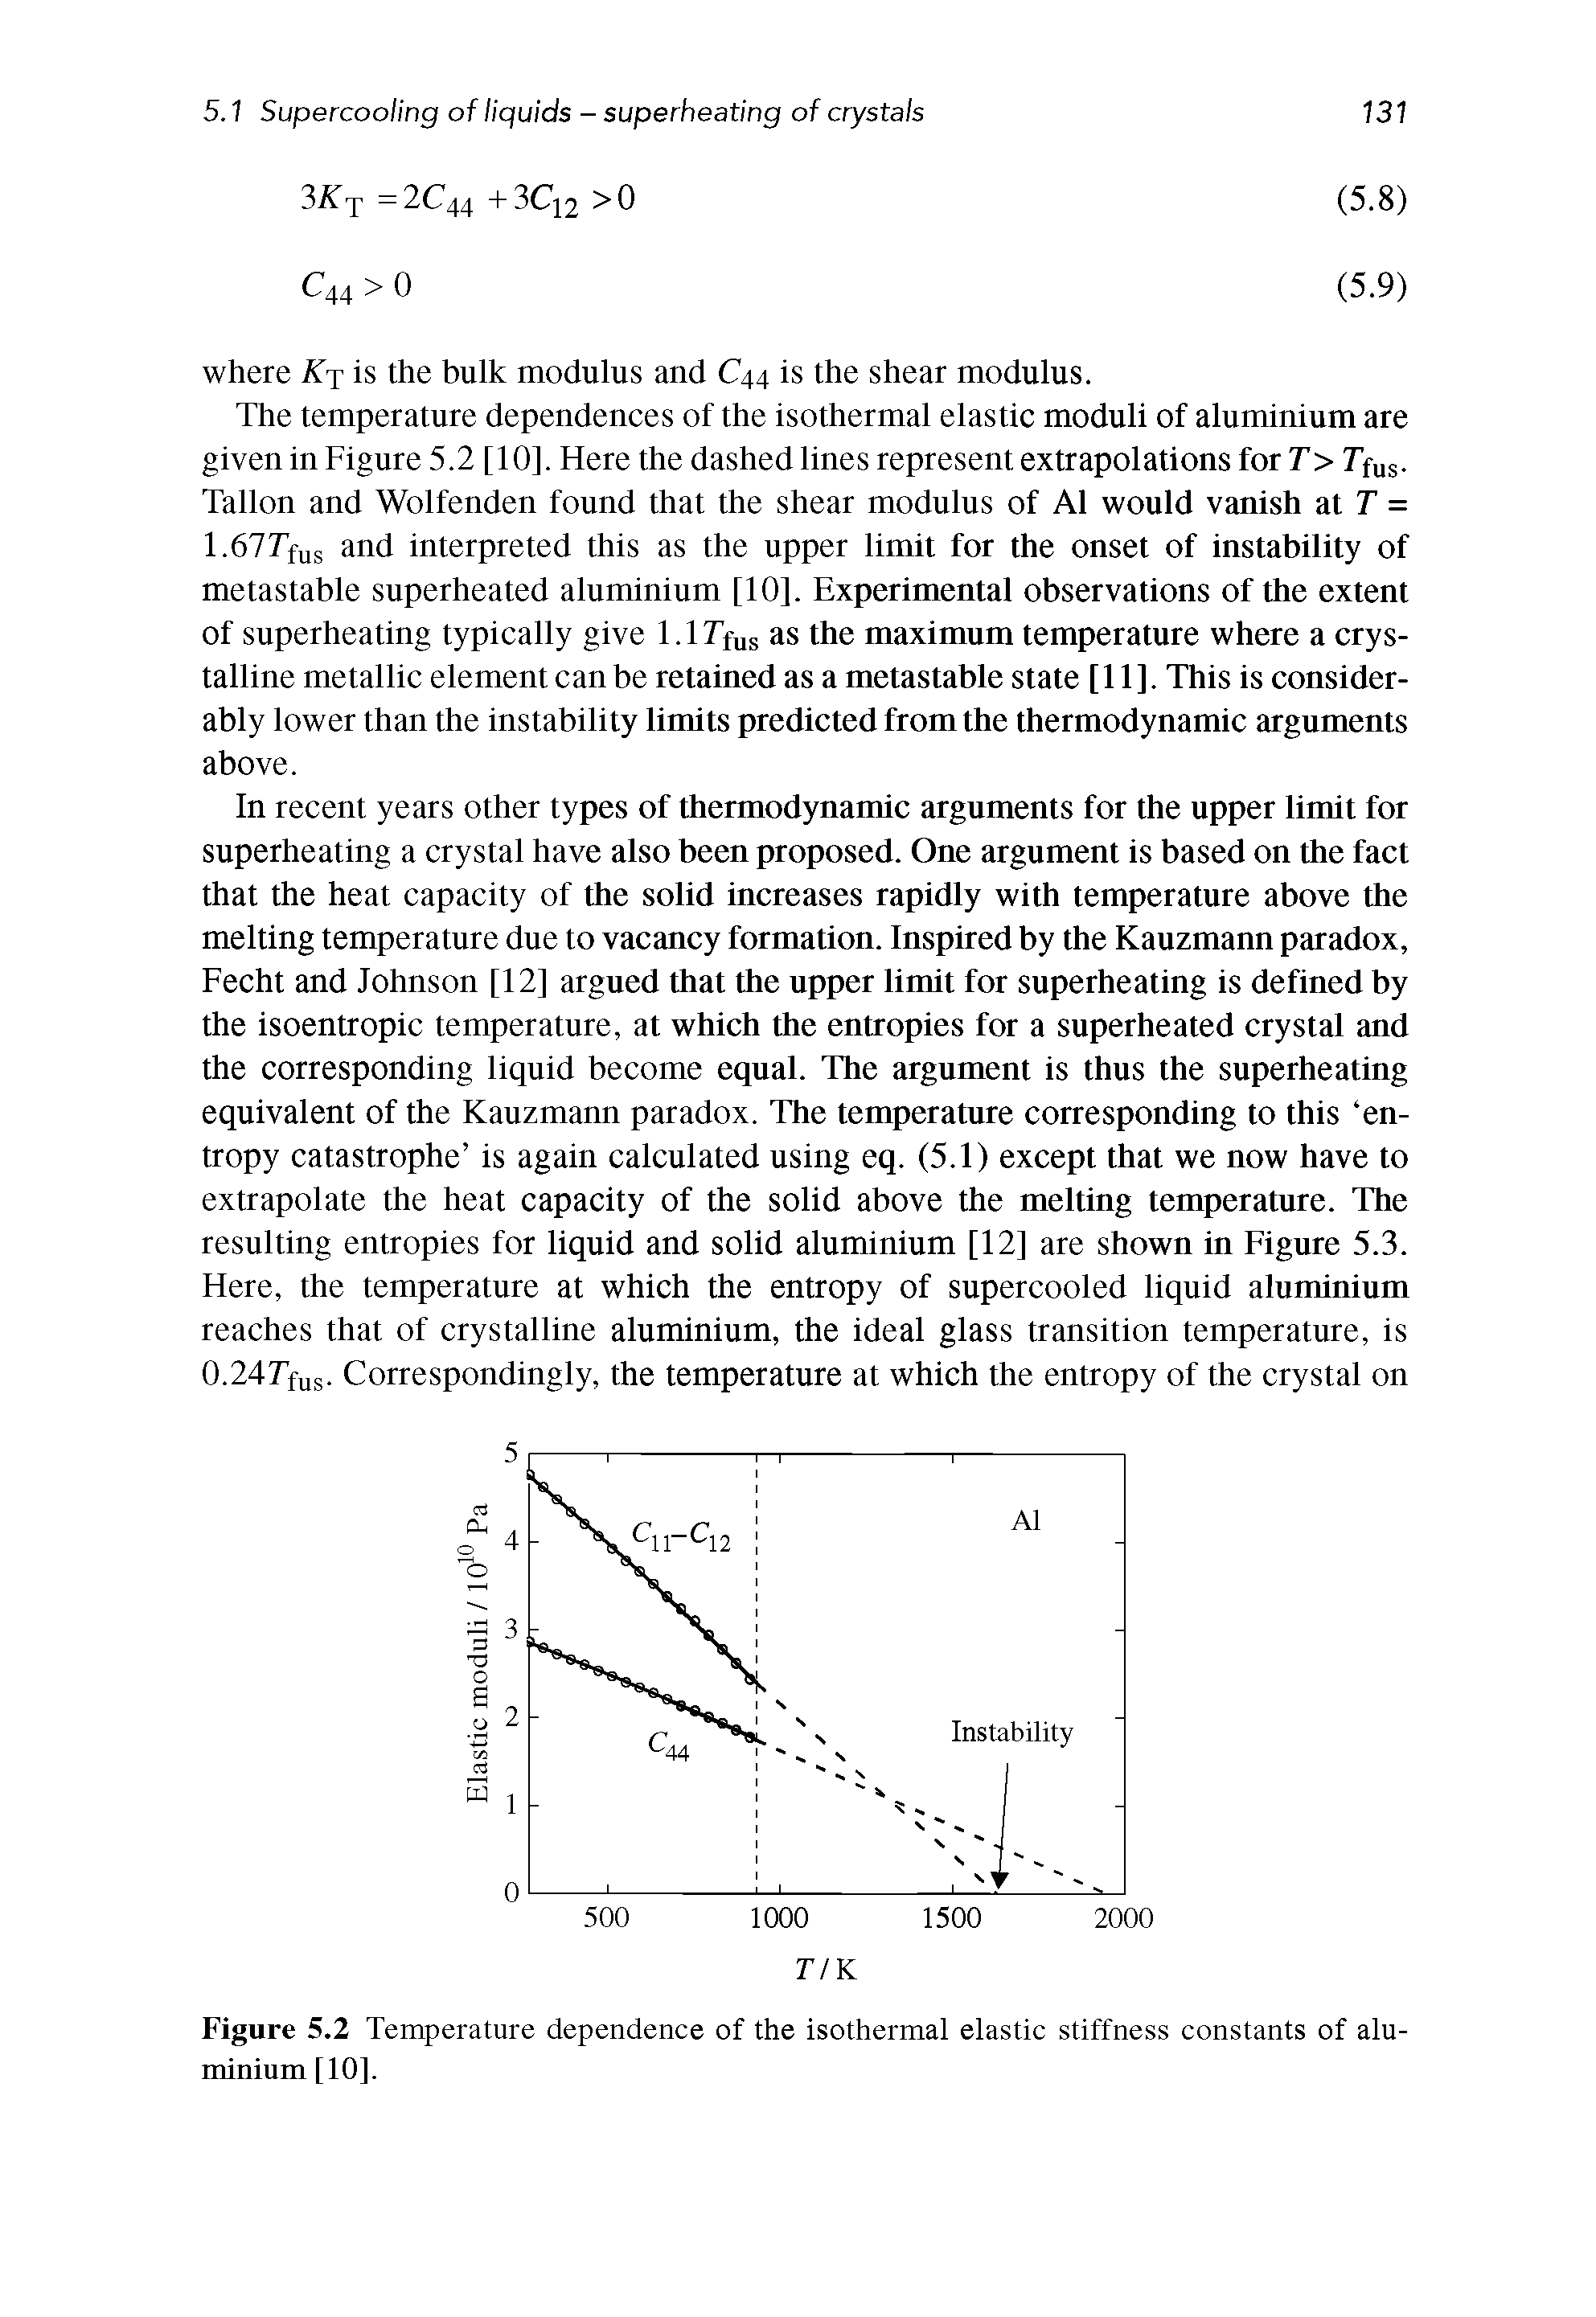 Figure 5.2 Temperature dependence of the isothermal elastic stiffness constants of aluminium [10].